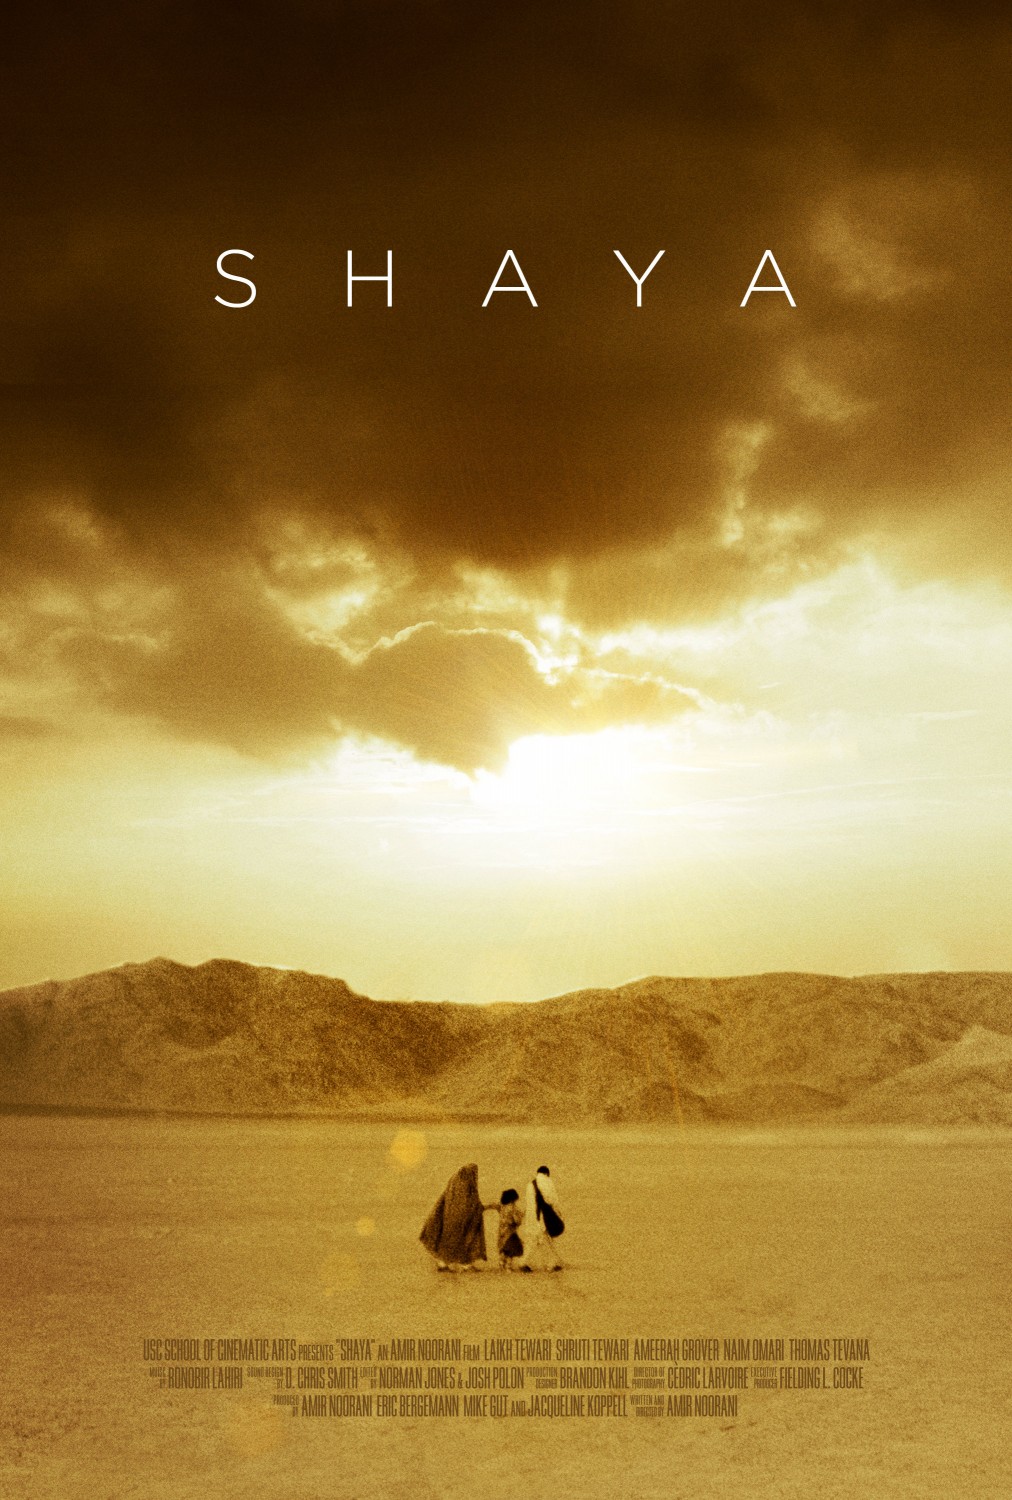 Extra Large Movie Poster Image for Shaya